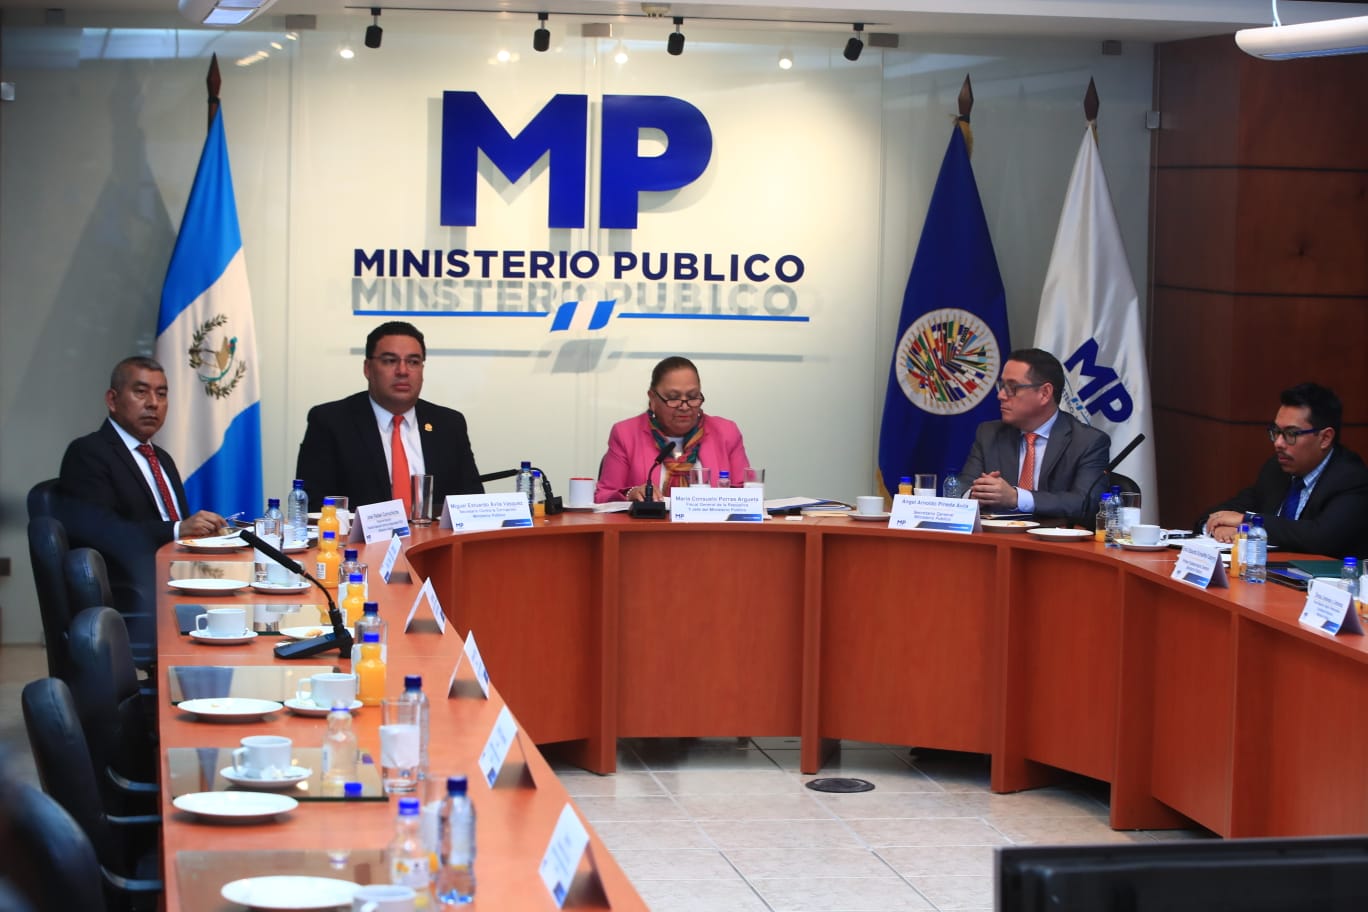 Consuelo Porras, fiscal general y jefa del MP, durante una conferencia de prensa. (Foto Prensa Libre: María José Bonilla)